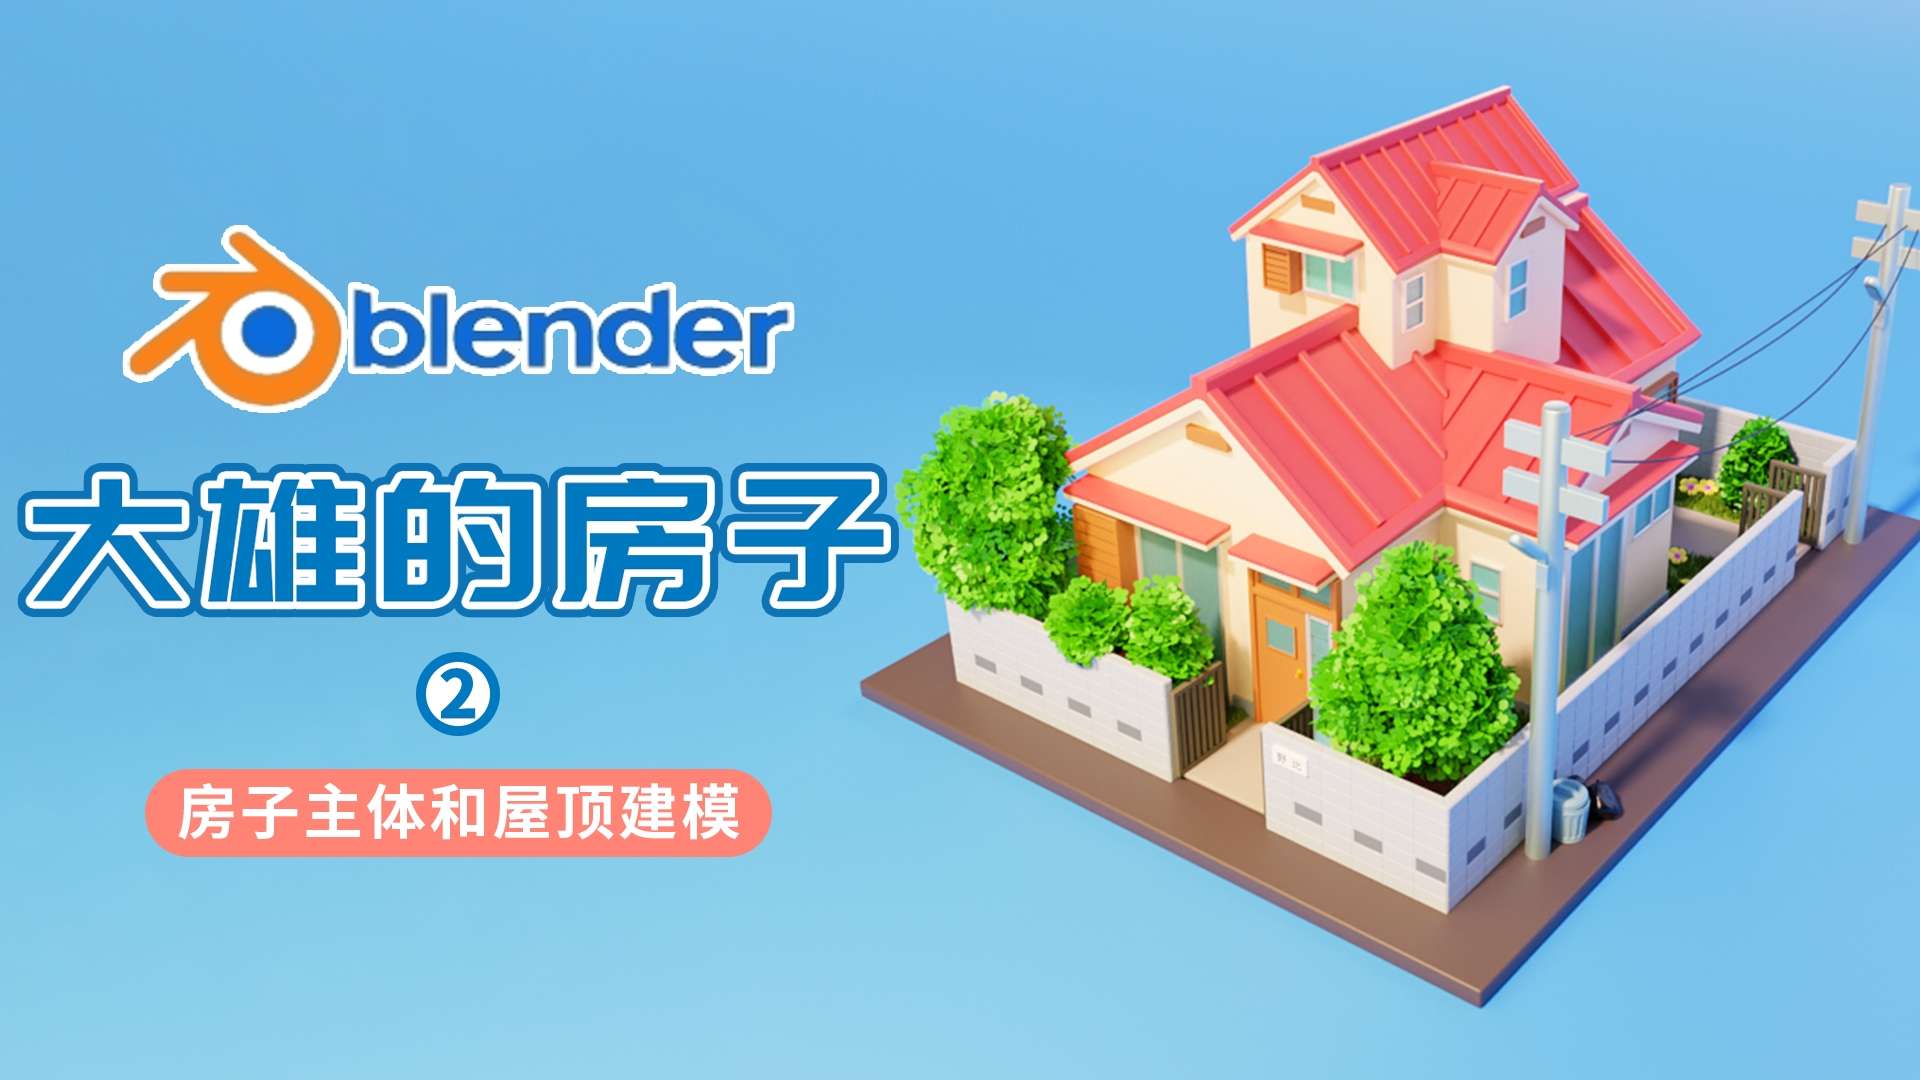 blender制作大雄房子2—房子主体和屋顶建模